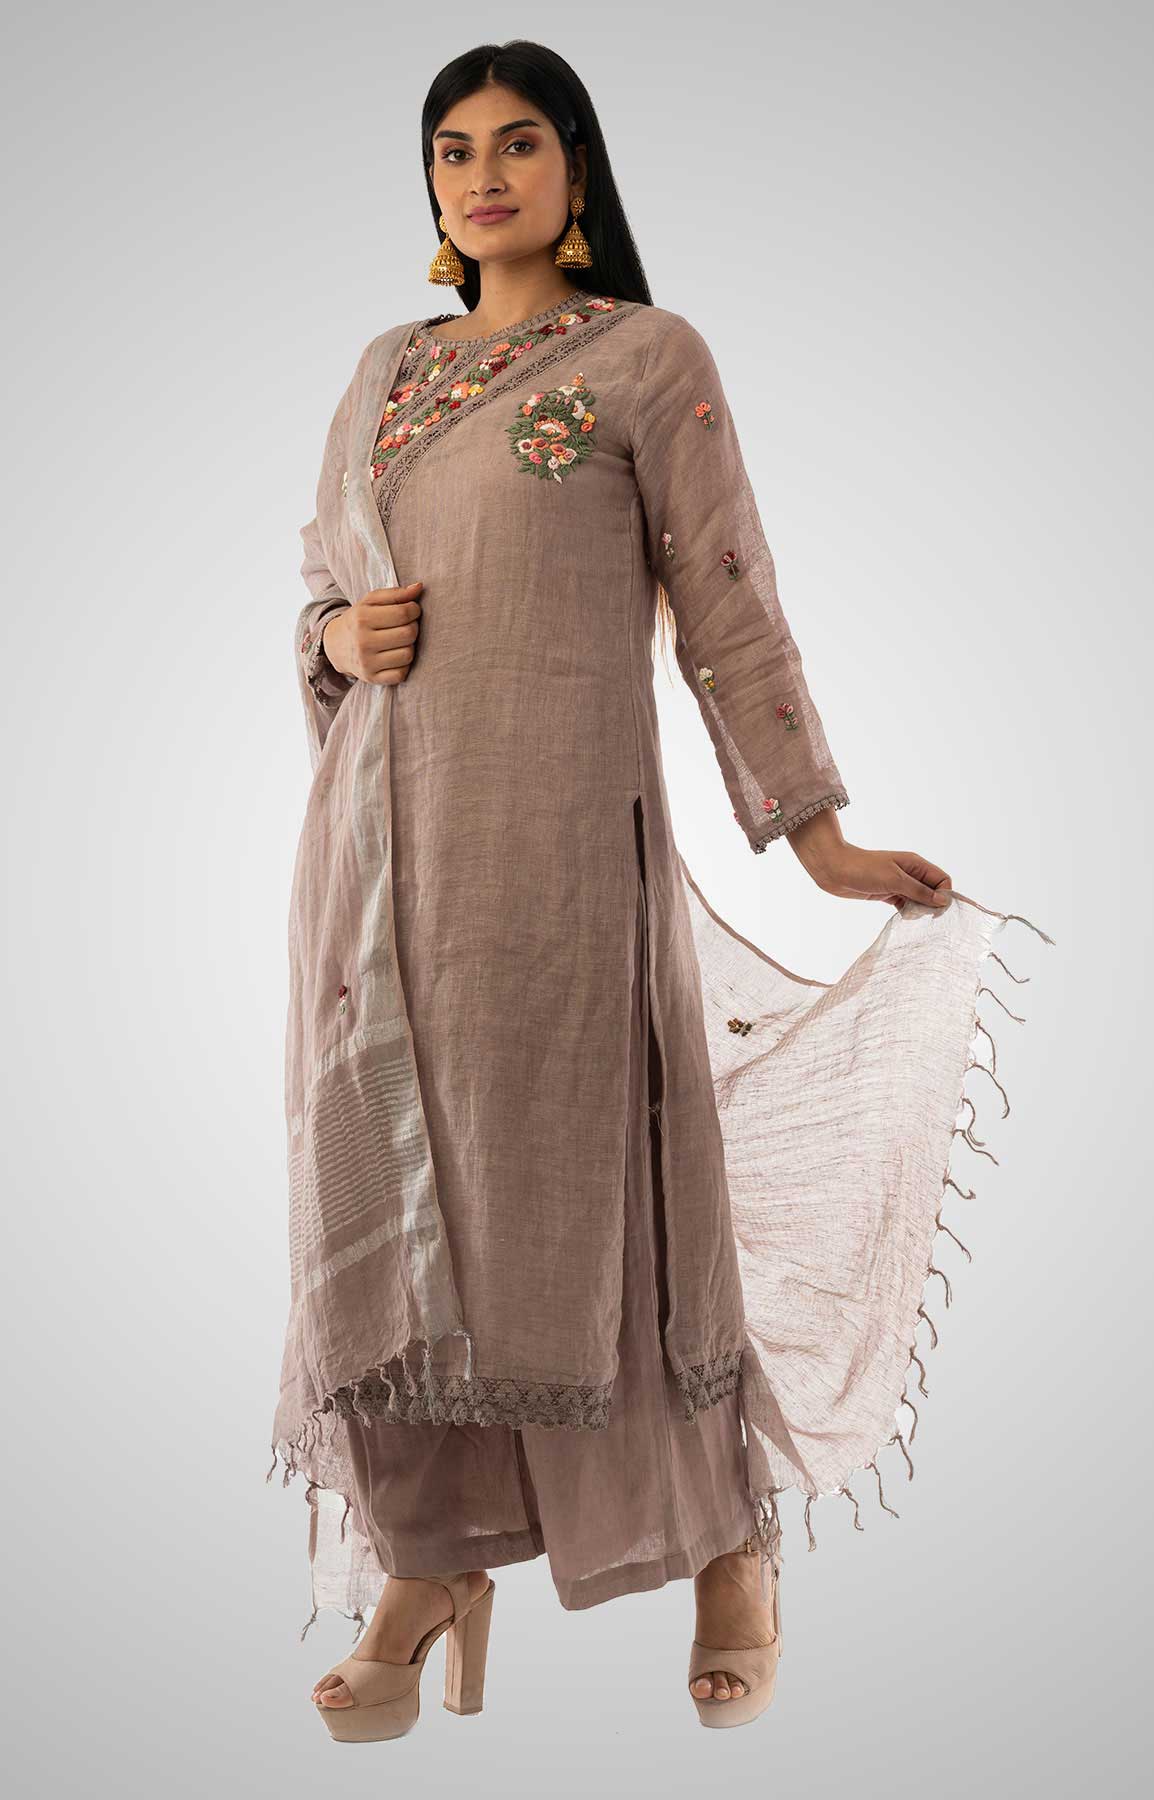 Sand Beige Linen Suit With Handloom Linen Duppatta Adorned With Resham Work – Viraaya By Ushnakmals